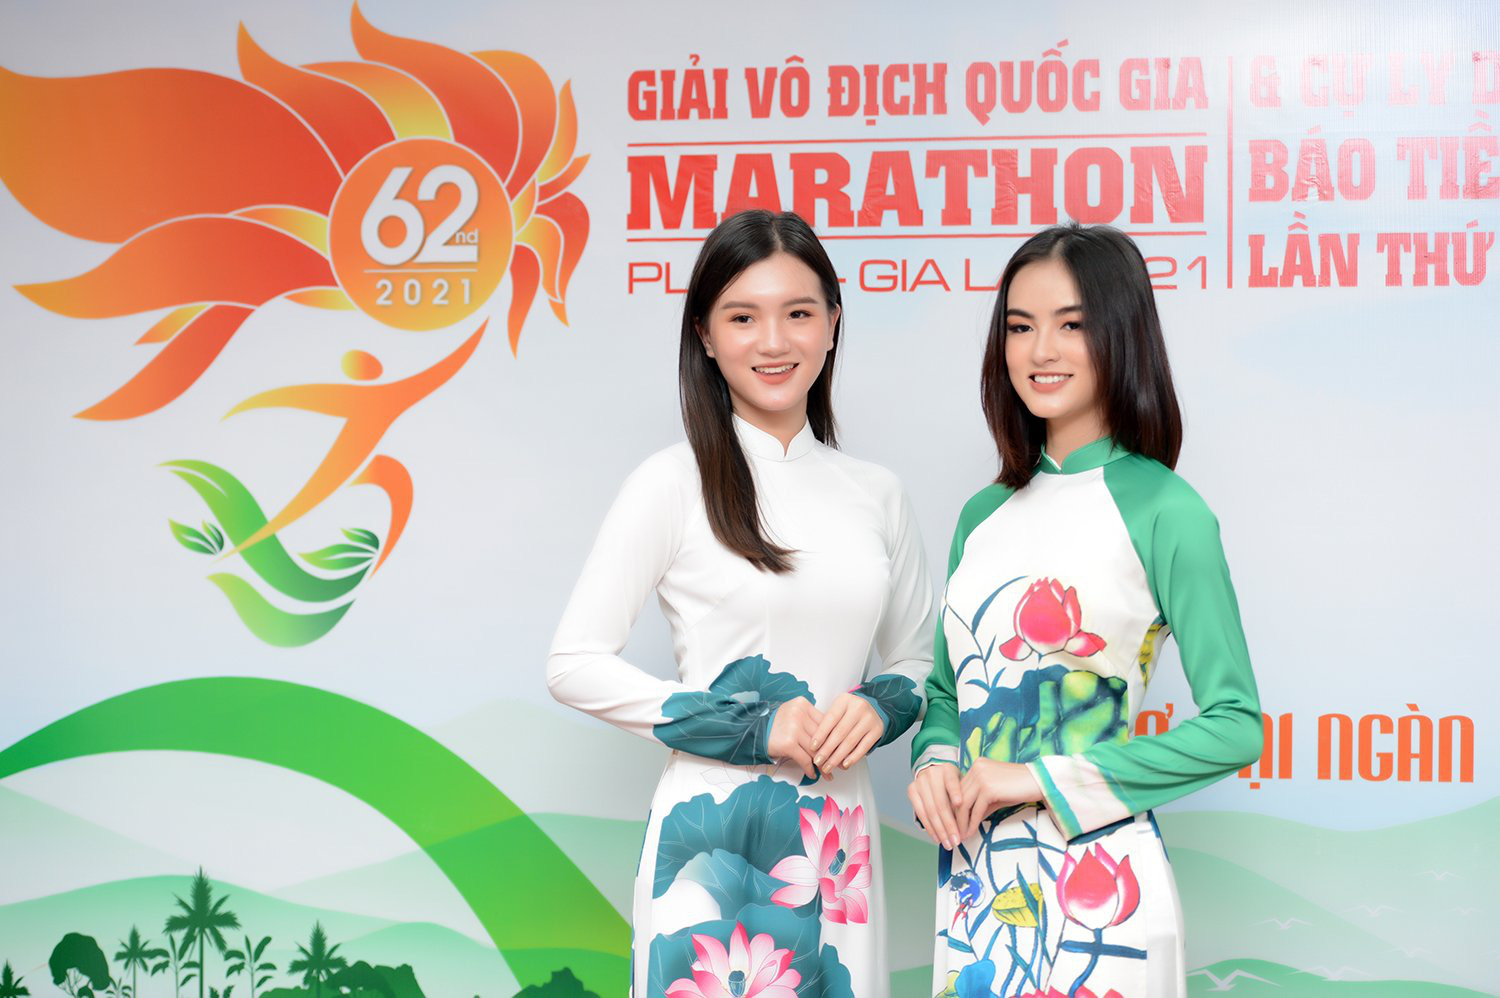 Hoa hậu Đỗ Mỹ Linh đẹp giản dị dự giải Marathon báo Tiền Phong - Ảnh 13.